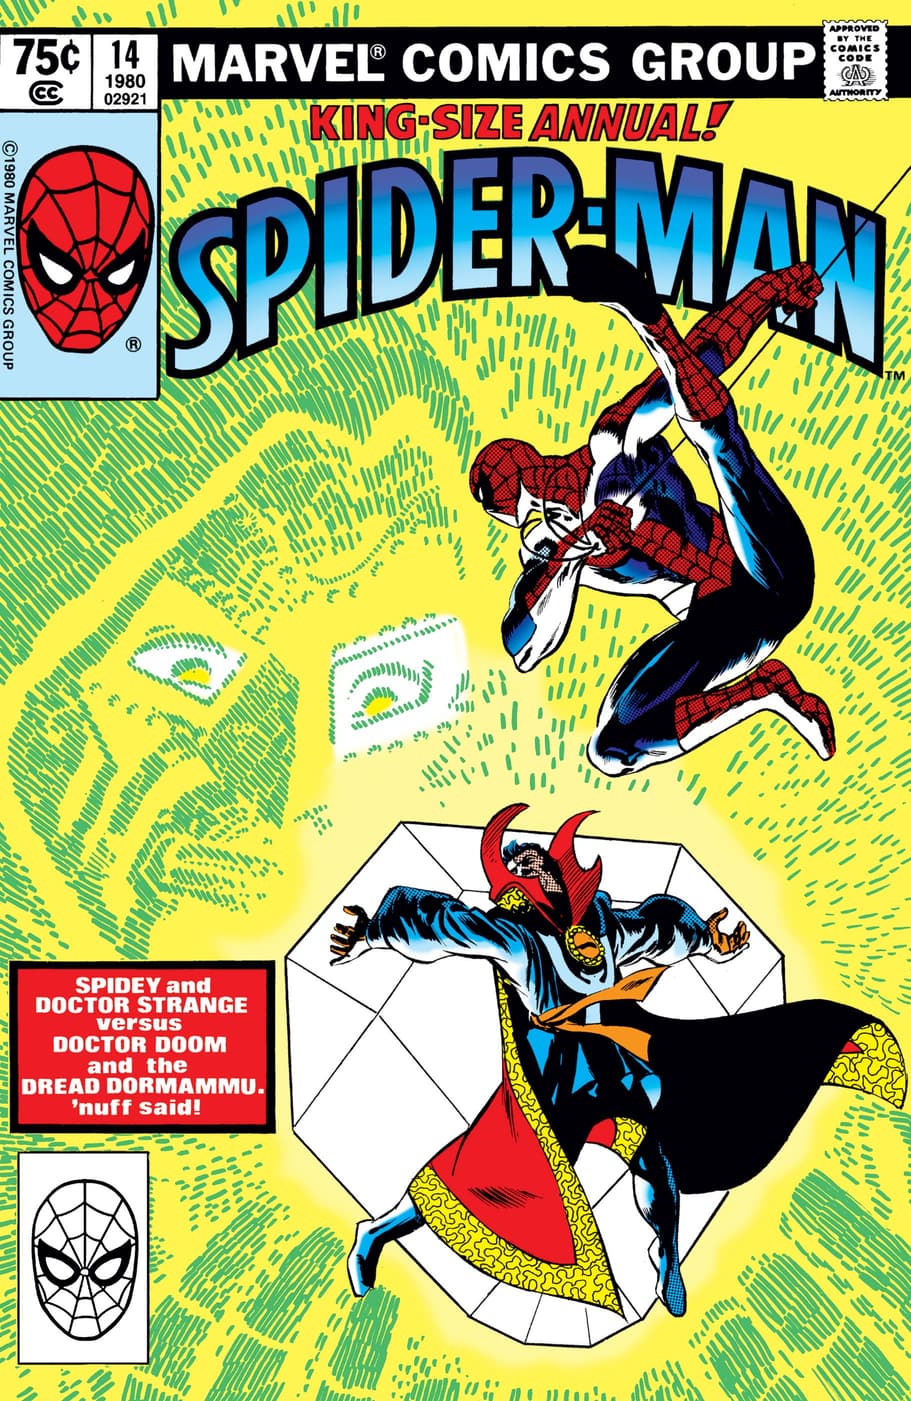  AMAZING SPIDER-MAN ANNUAL (1964) #14